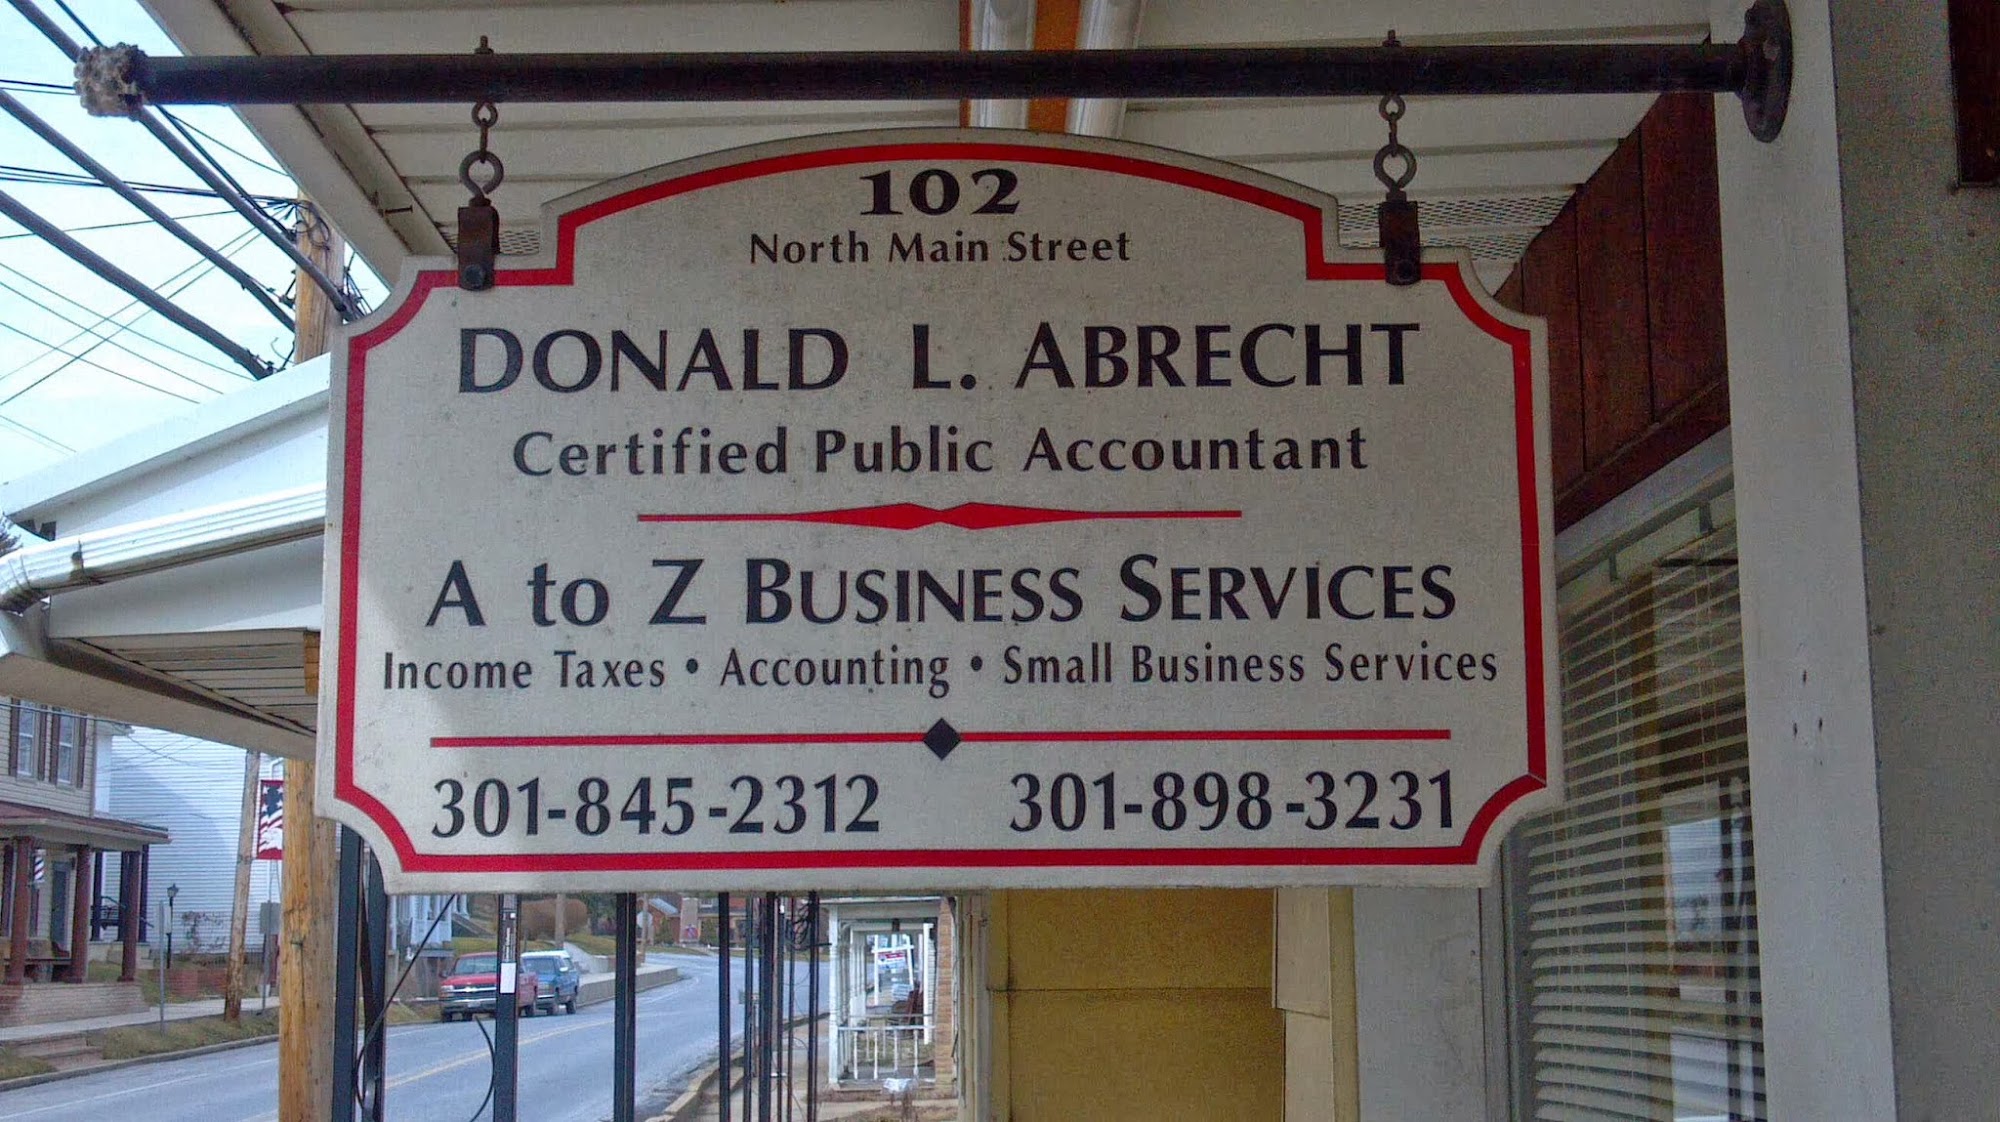 A-Z Financial Services, Inc: Donald L. Abrecht